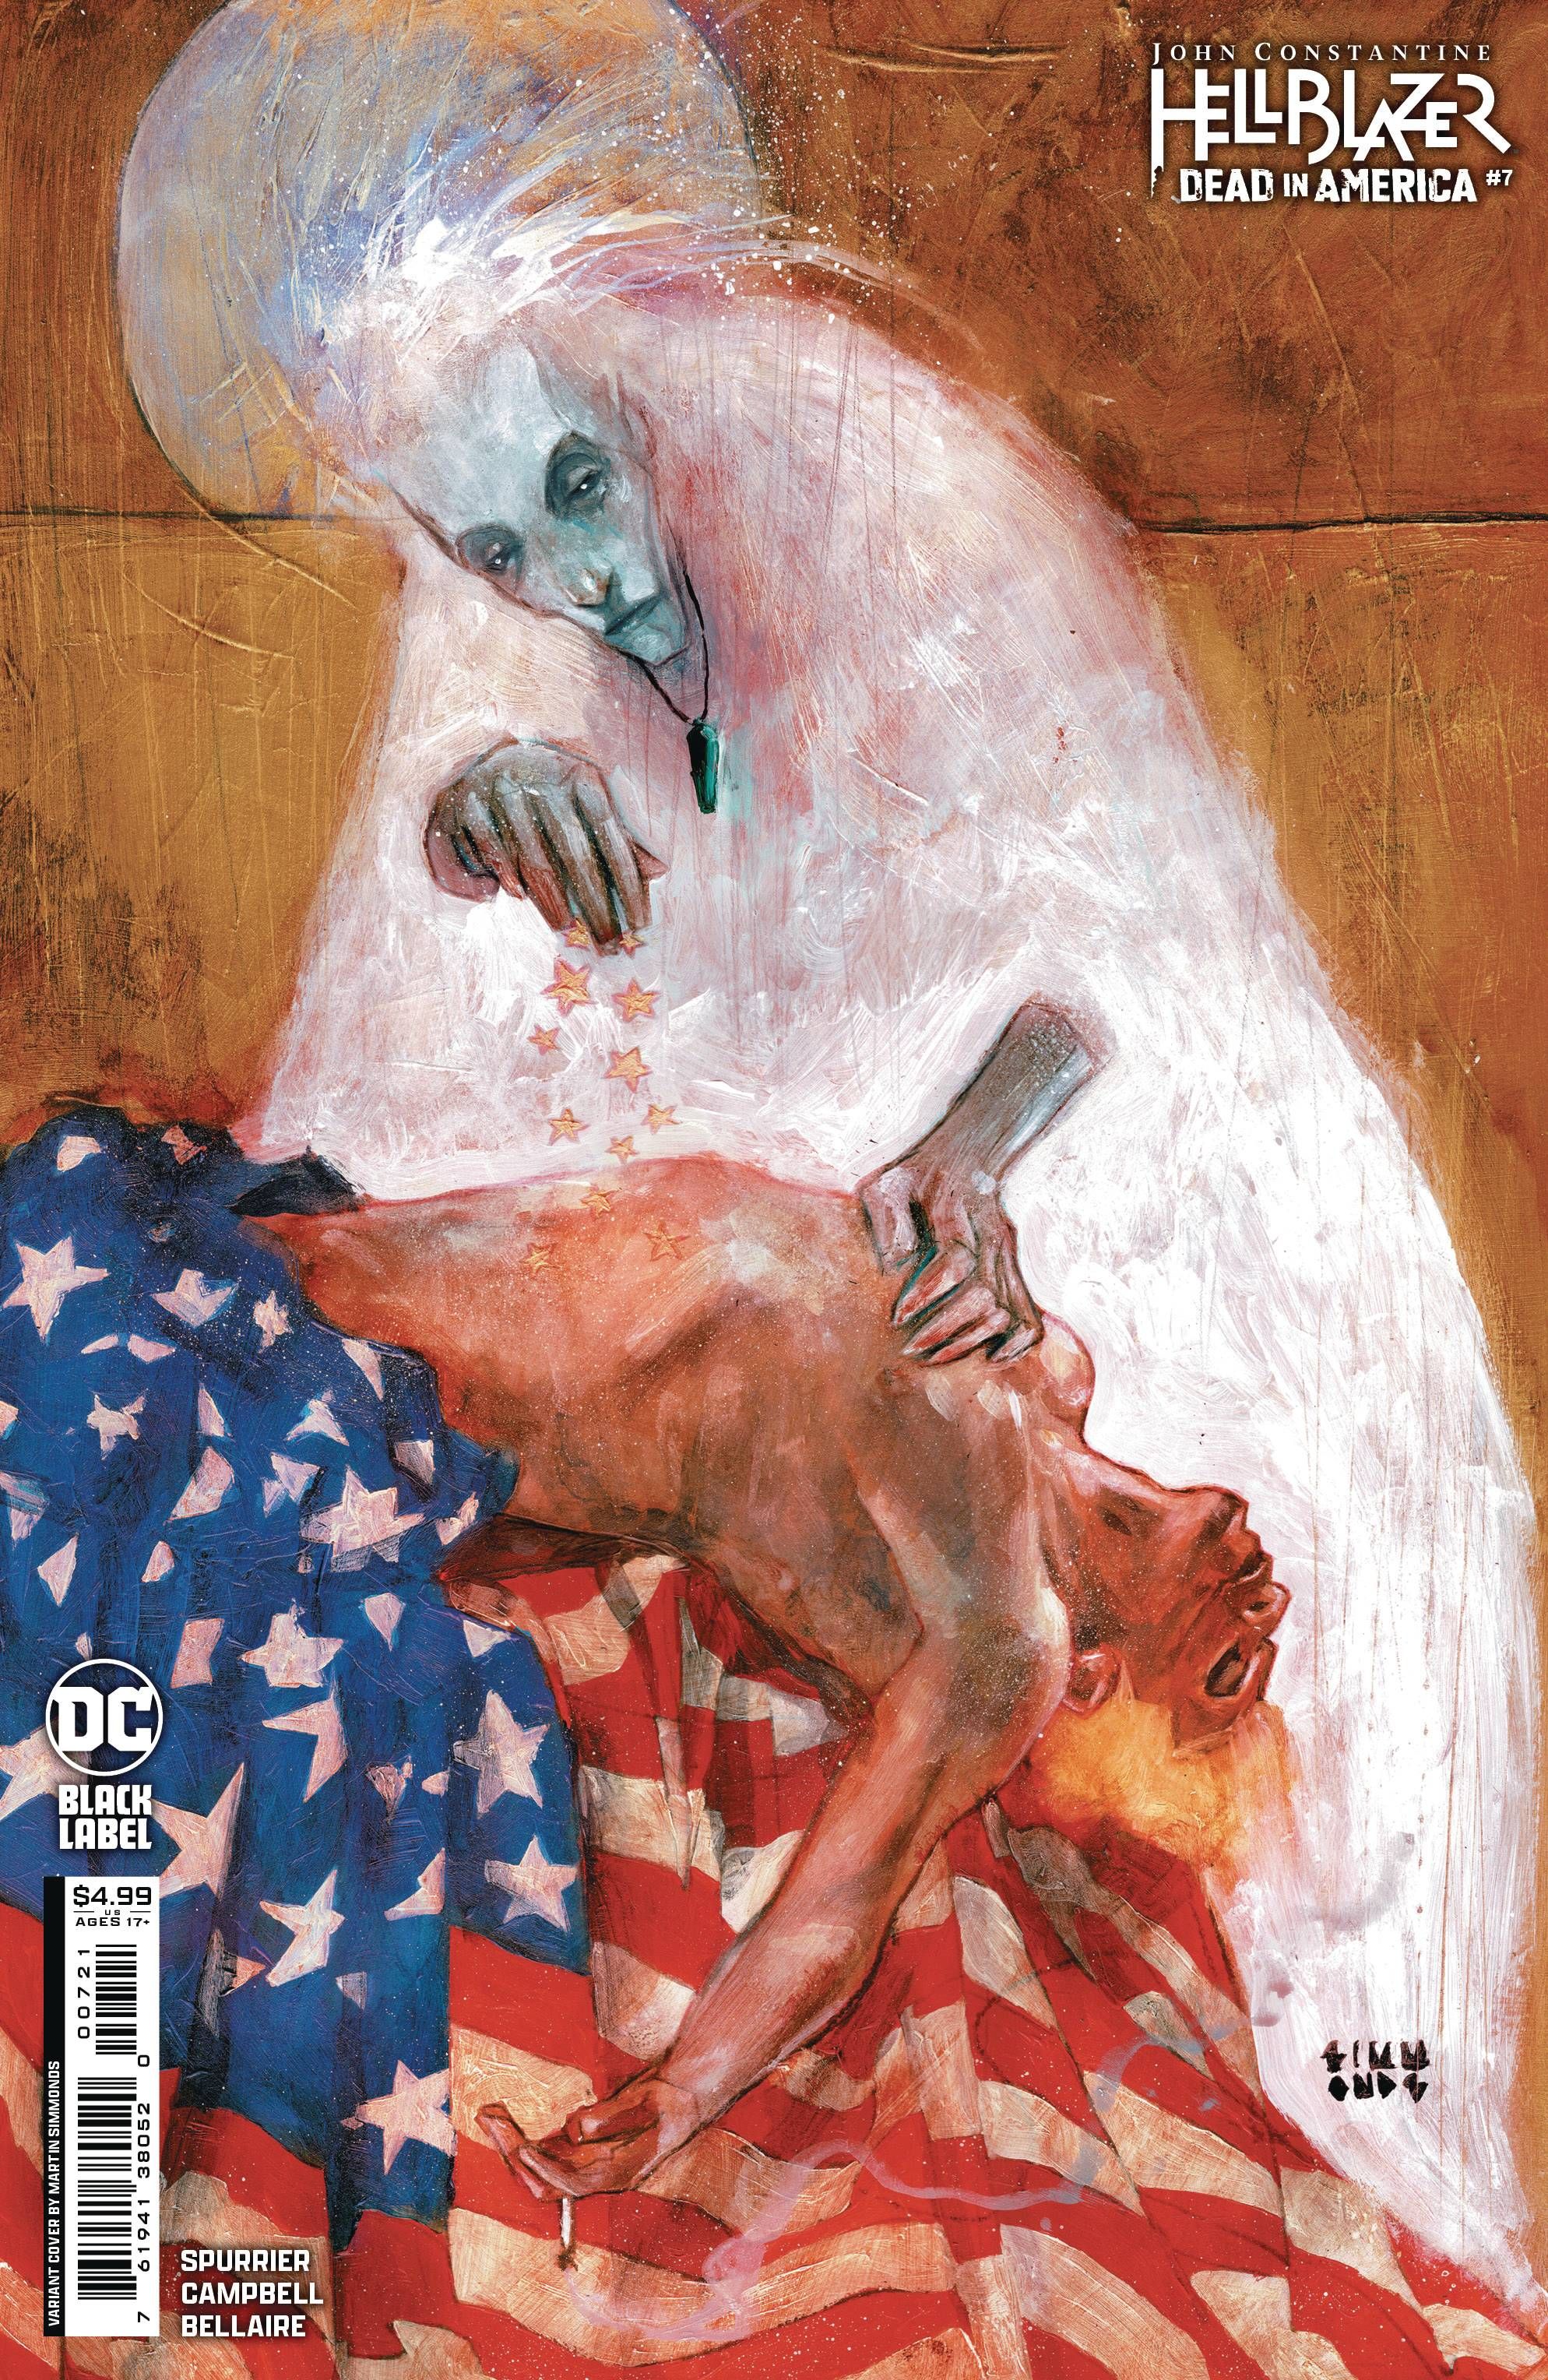 John Constantine Hellblazer morto na América 7 Capa da variante Simmonds: Constantine esfaqueado por um fantasma enquanto usava a bandeira americana.